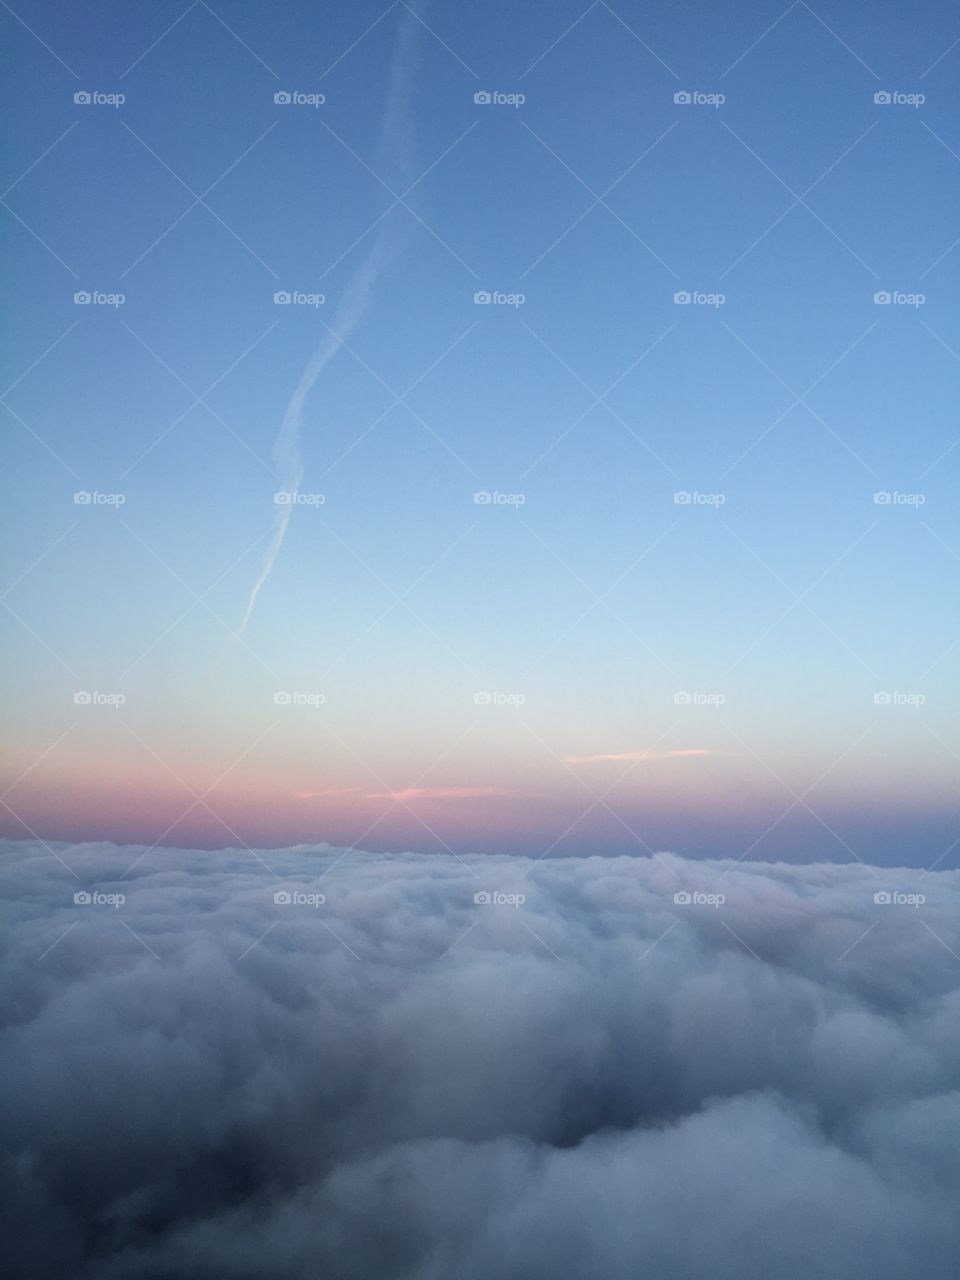 Aircraft
Sky
Clouds
